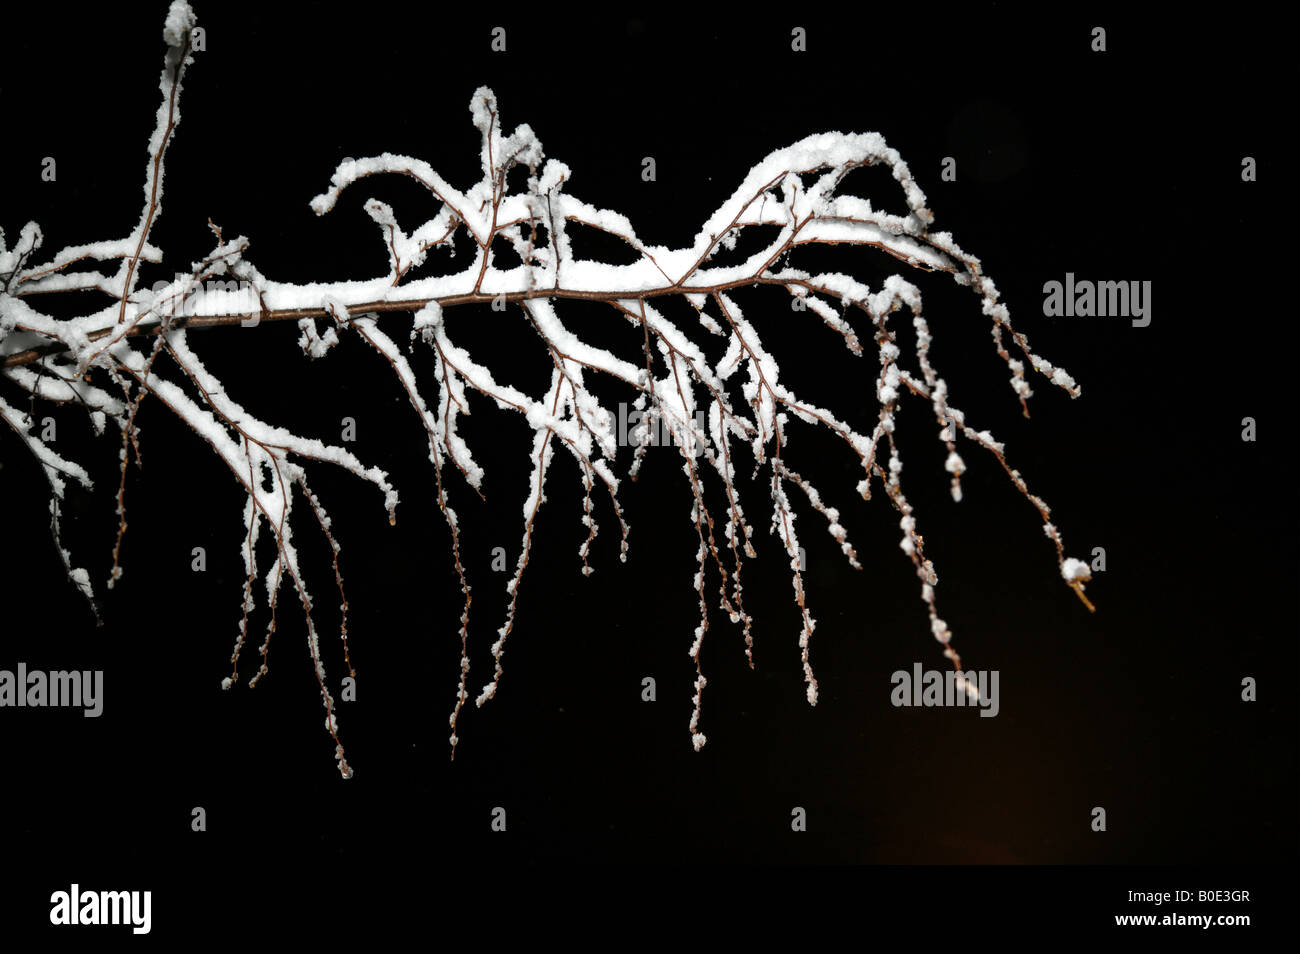 Photo de nuit d'une branche de l'arbre couvert de neige isolées Banque D'Images